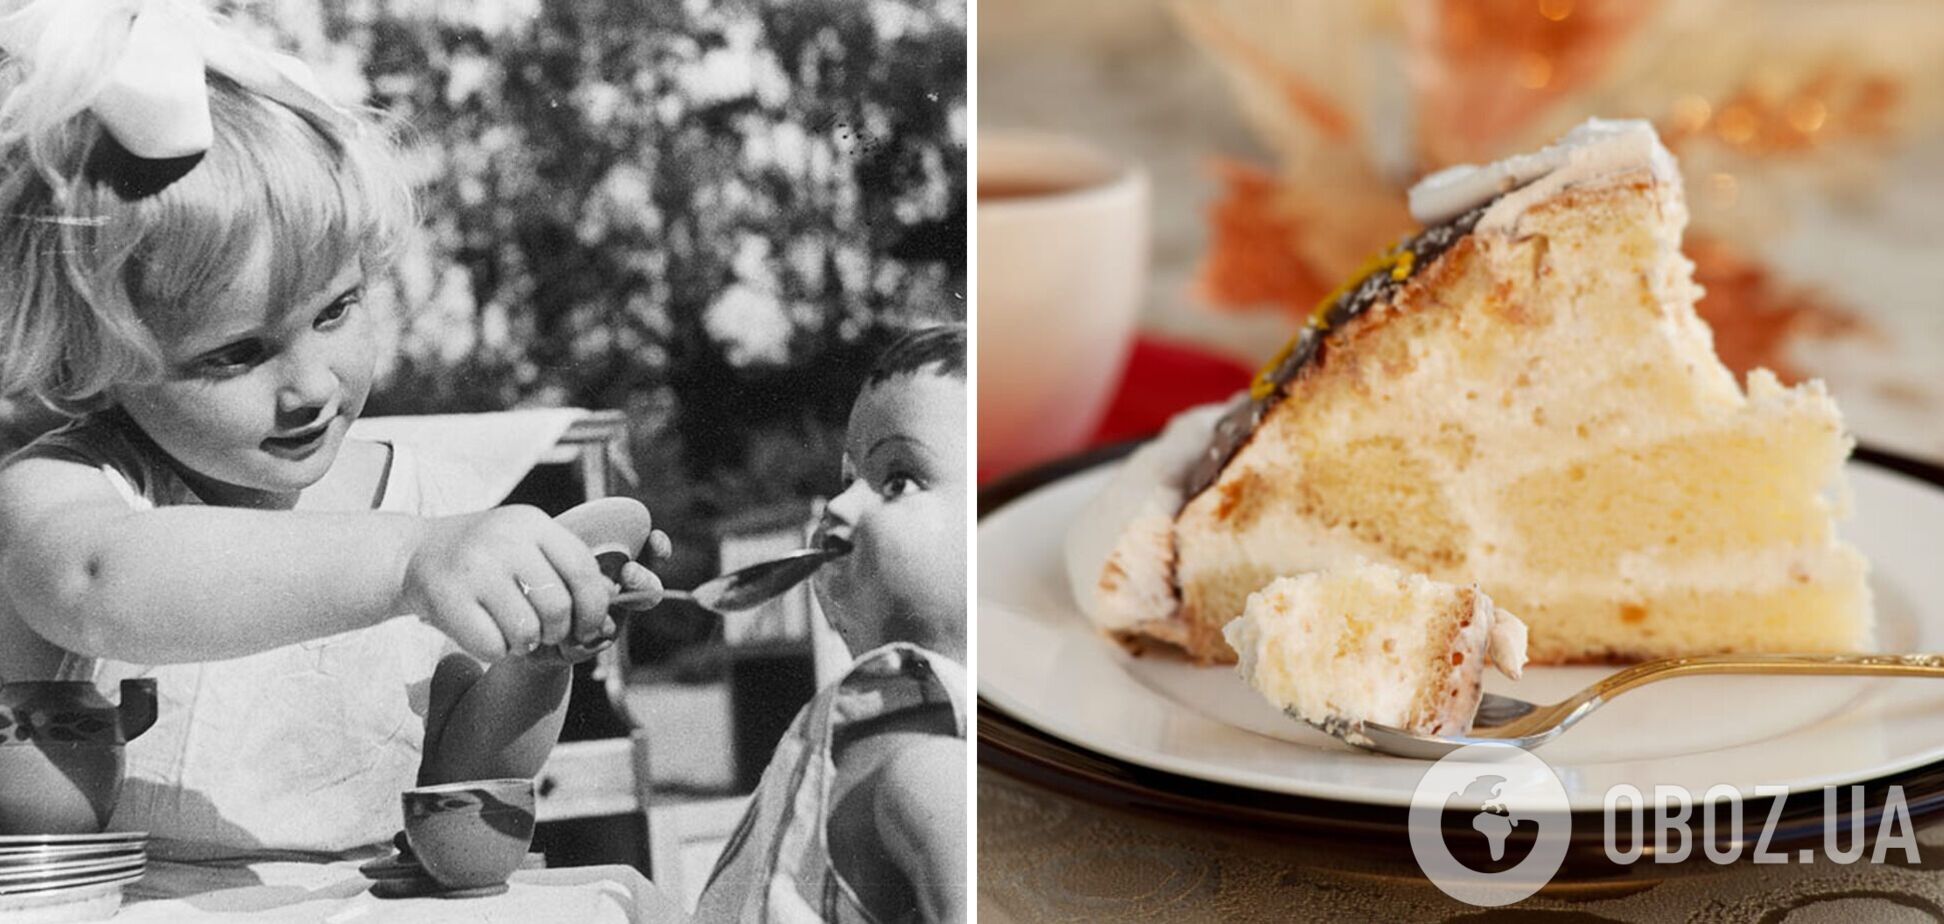 Забутий торт із СРСР 'Черепашка': як повторити популярний десерт